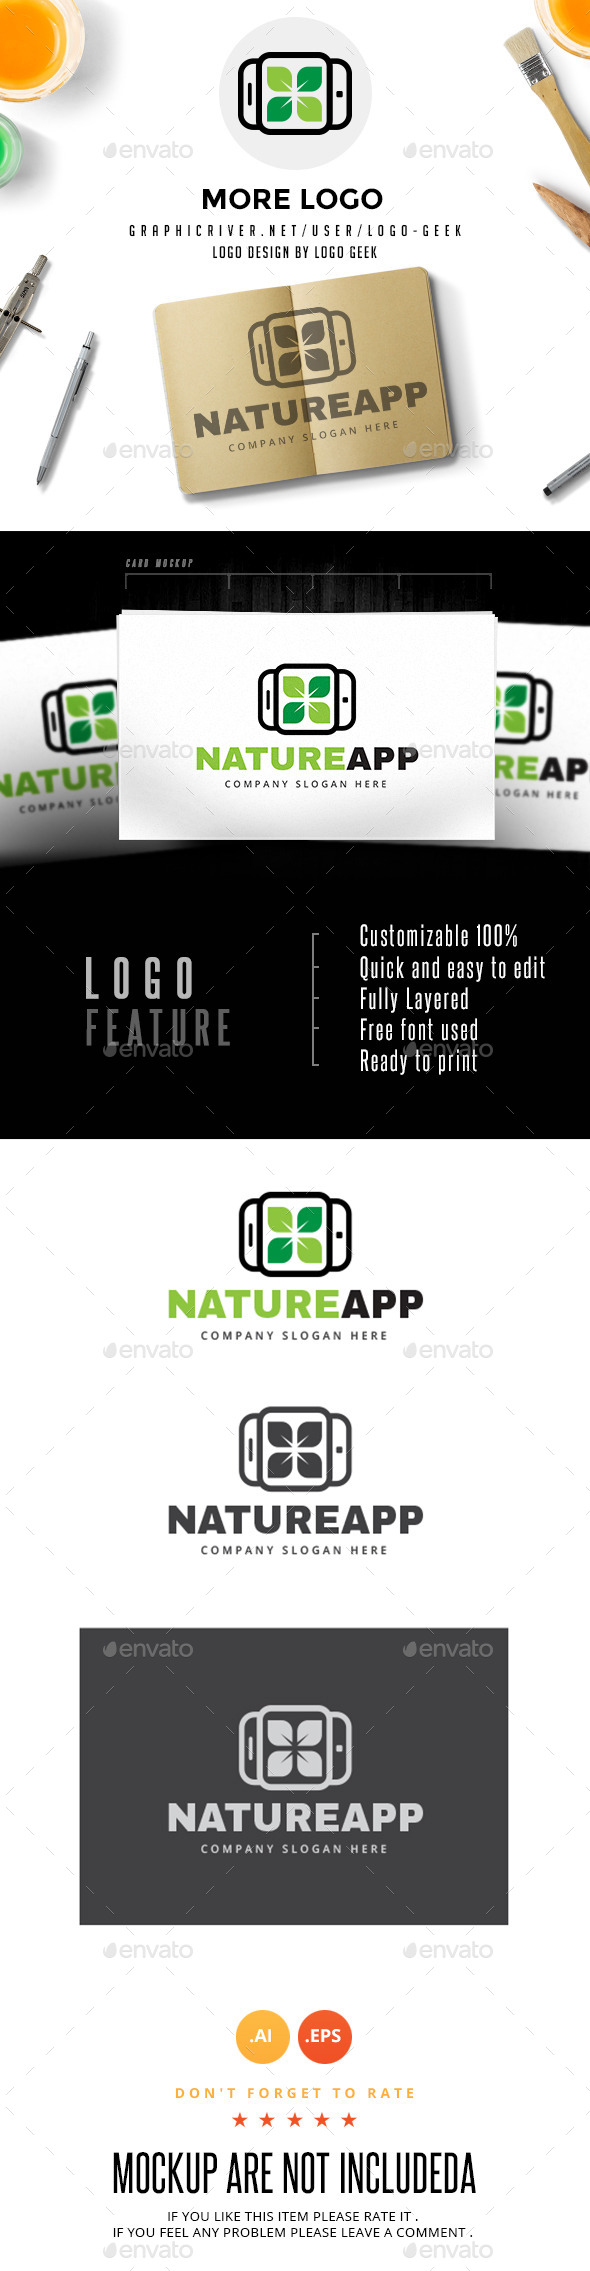 Nature App